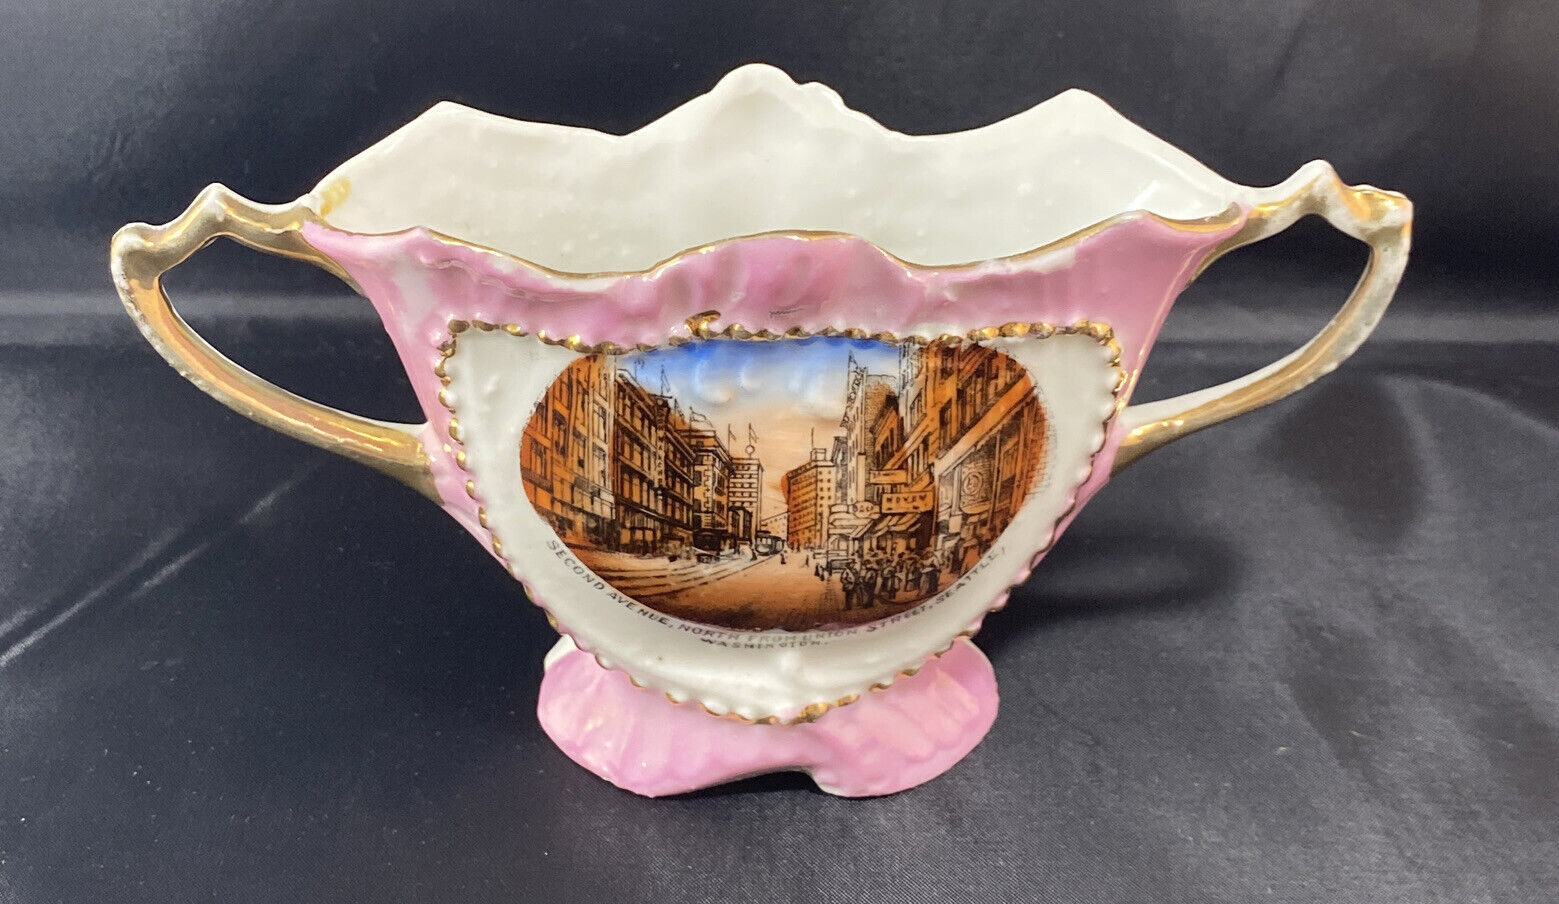  Souvenir Cup Second Avenue Seattle Washington Handled Germany Porcelain Vintage